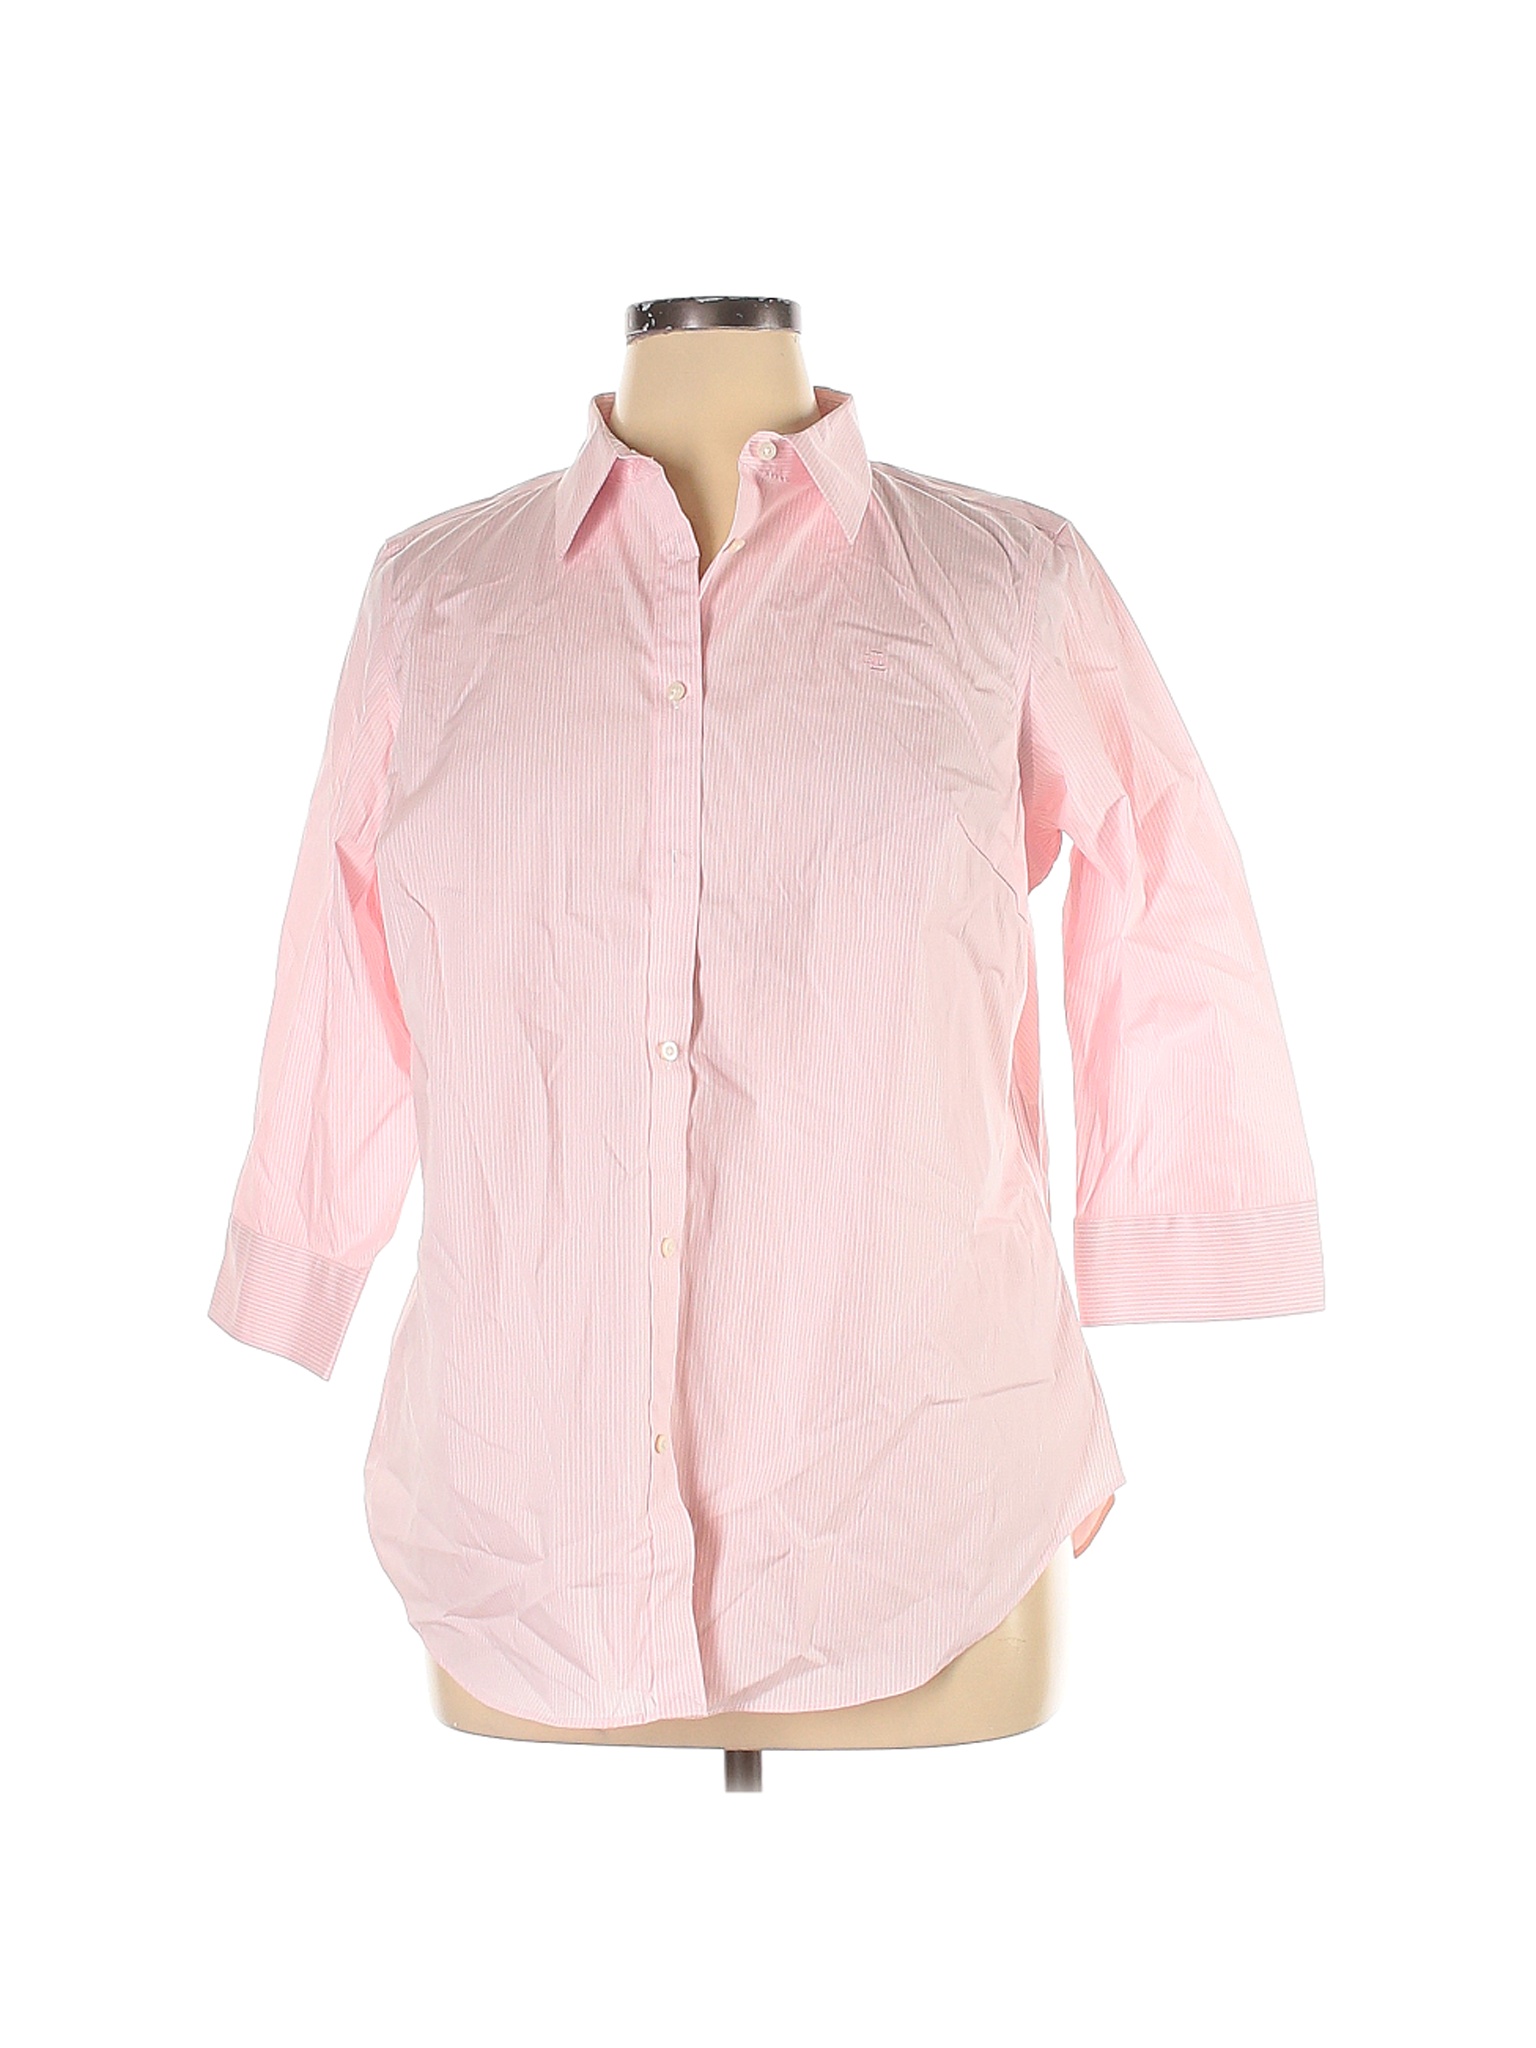 NWT Lauren by Ralph Lauren Women Pink 3/4 Sleeve Button-Down Shirt 1X ...